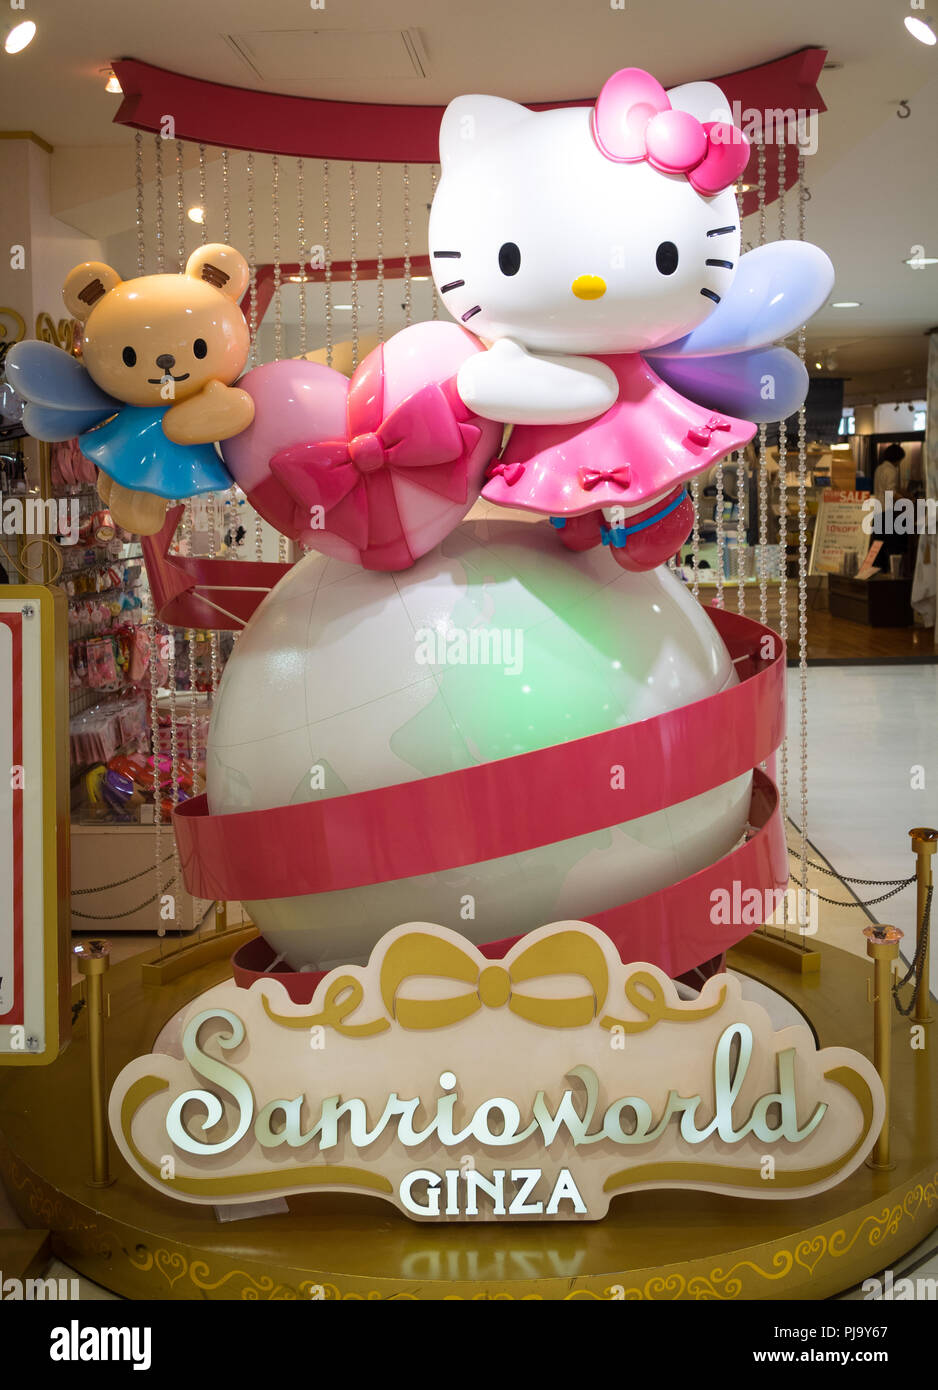 Una statua di Hello Kitty e il suo orsacchiotto, Tiny Chum, a Sanrioworld Ginza a Ginza, Tokyo, Giappone. Foto Stock